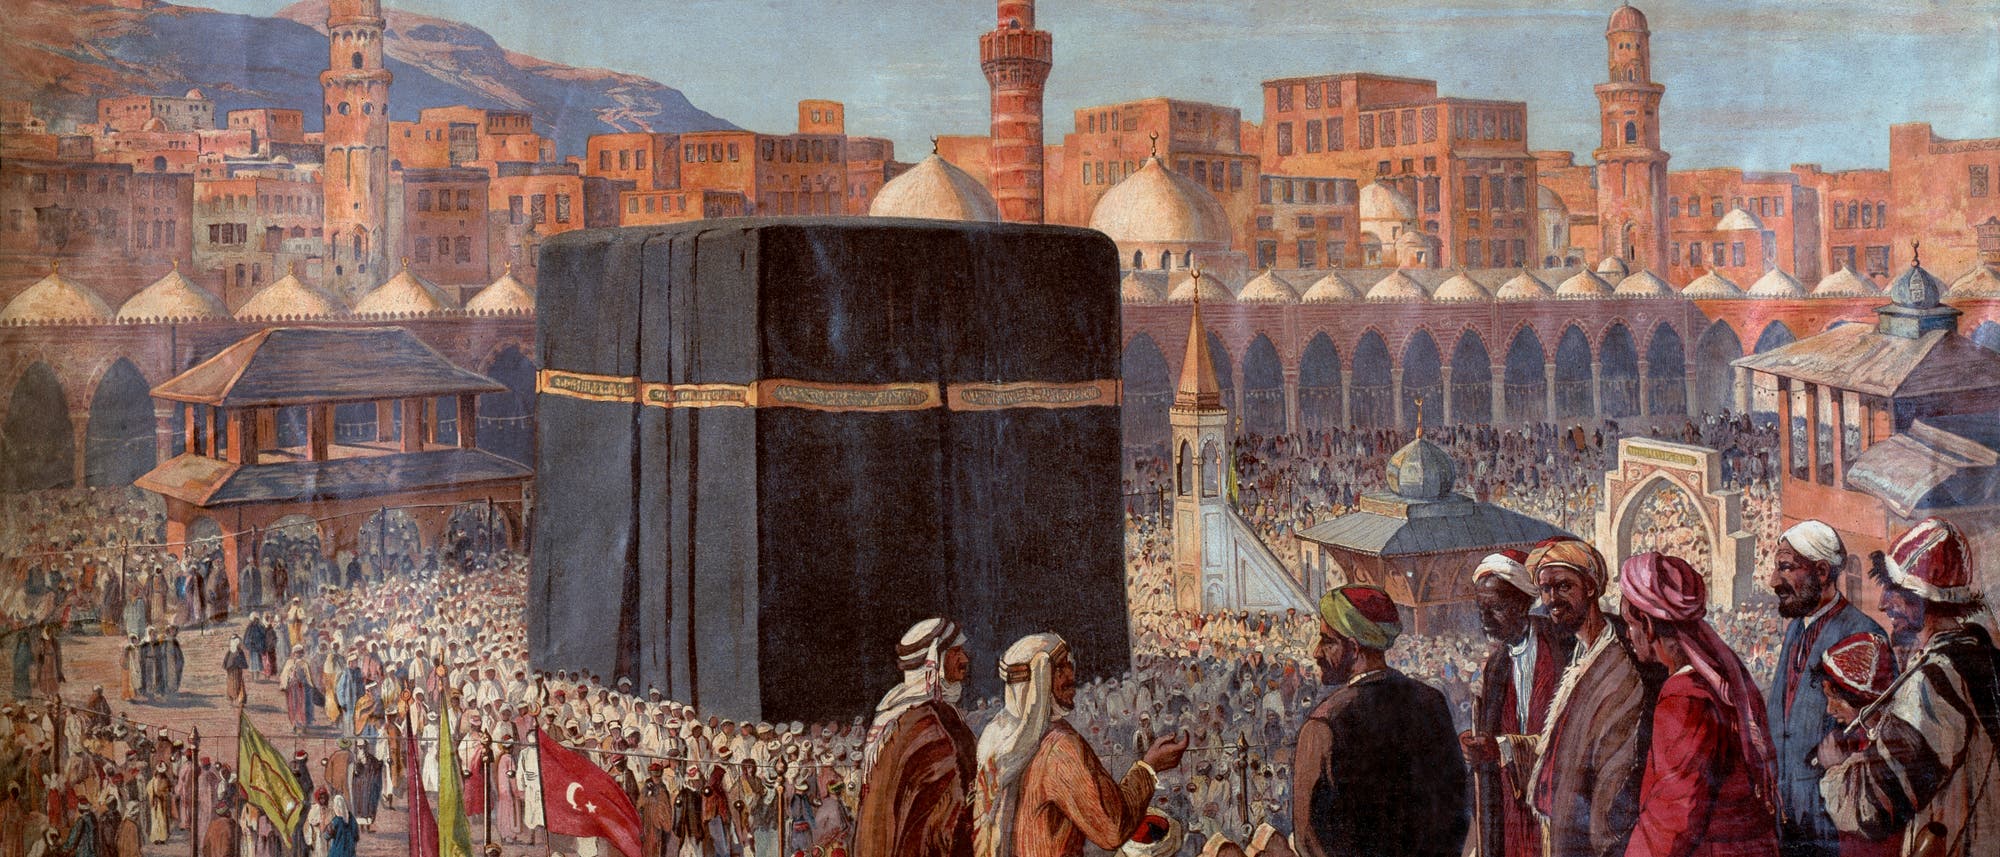 Die Hadsch in Mekka in einer Darstellung um 1900